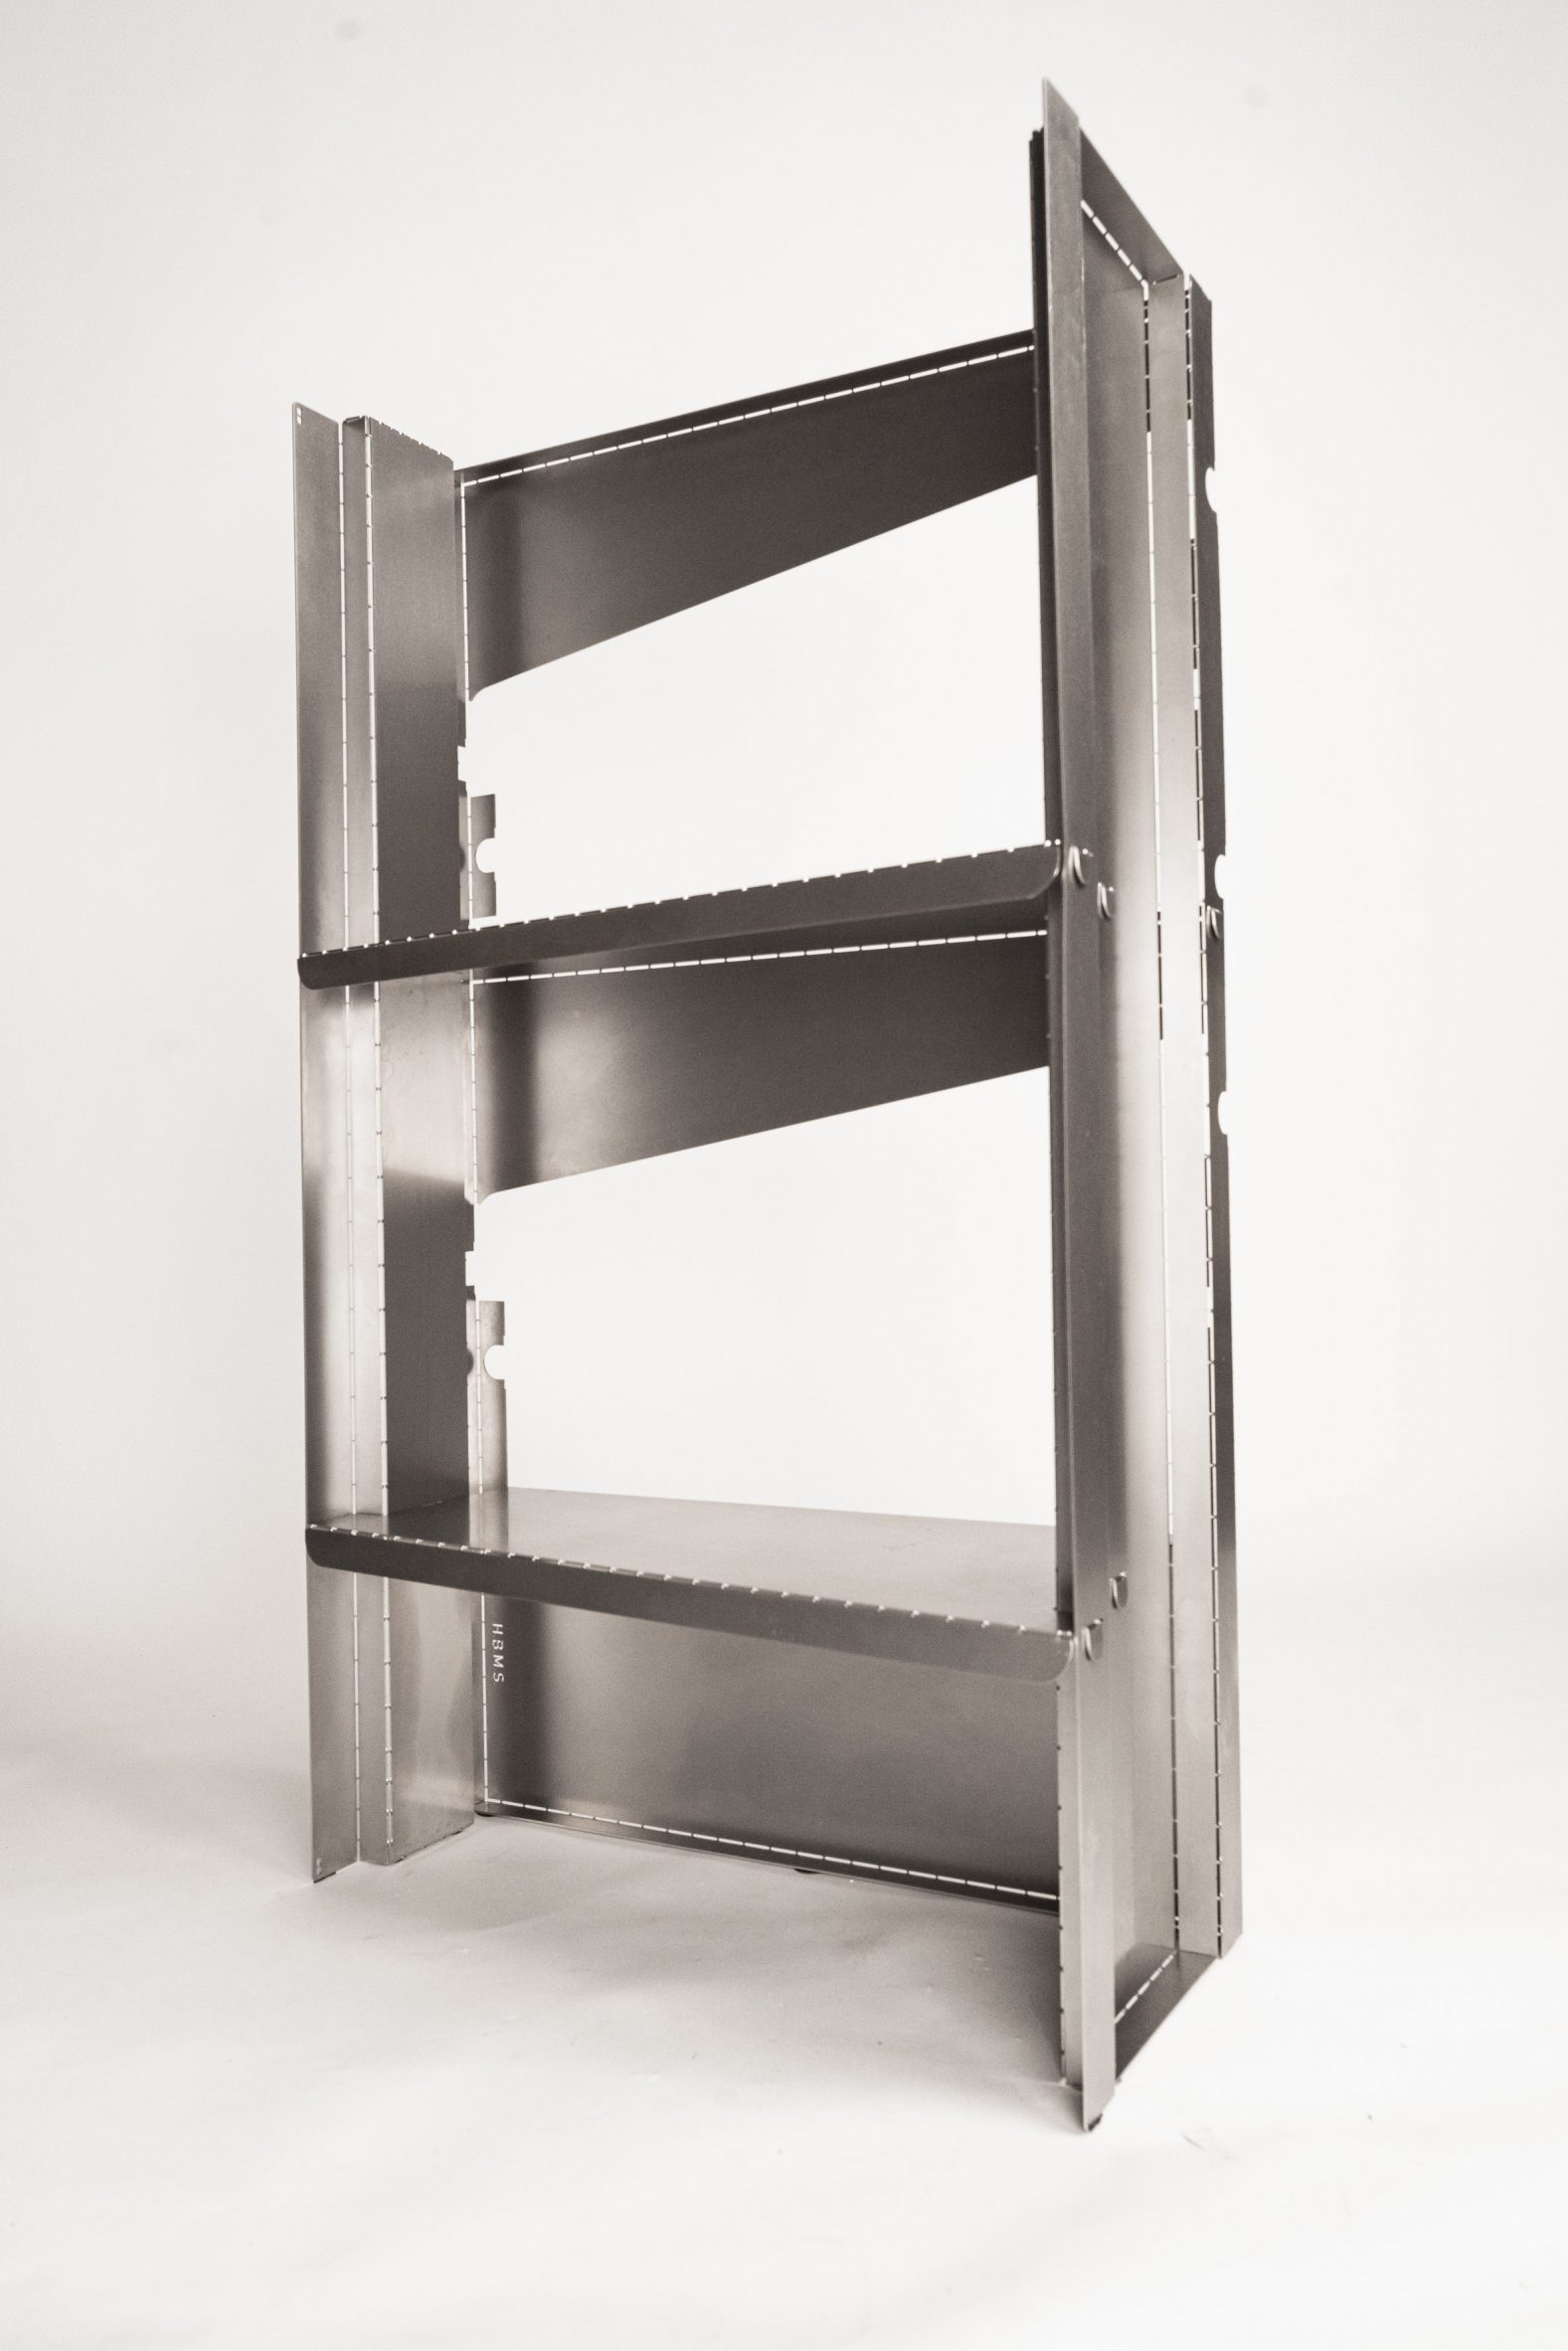 HBMS flat-pack metal shelving by Pierre Salaün